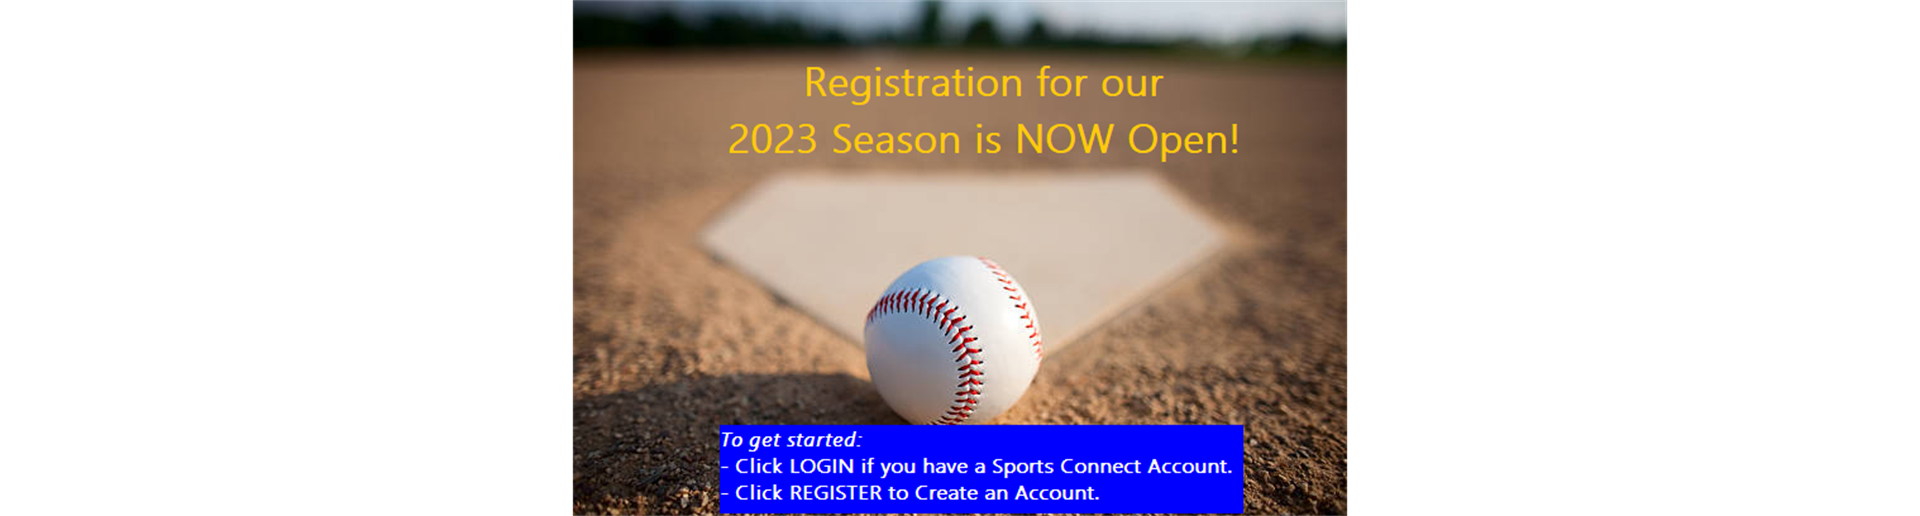 Registration is OPEN for 2023 Season